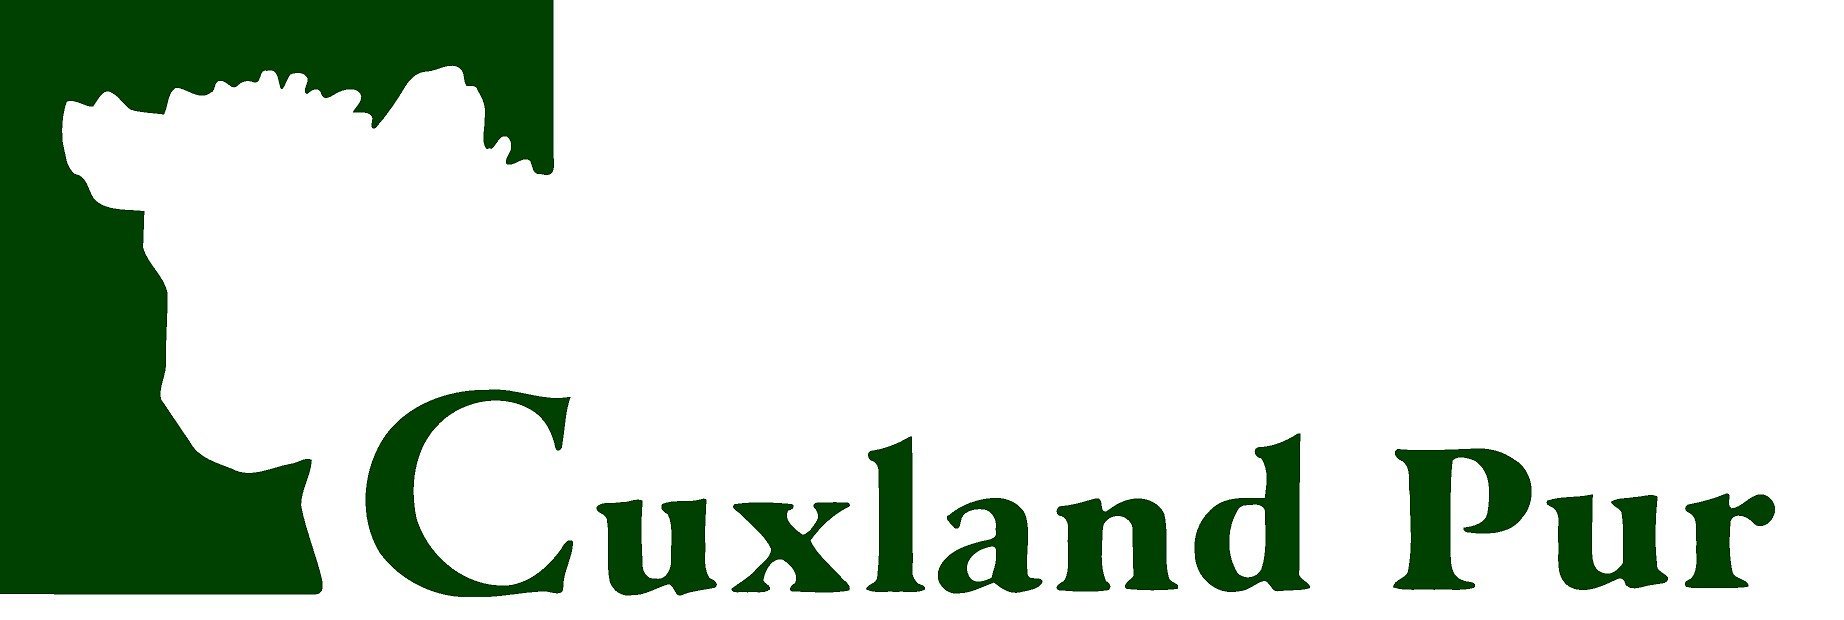 logo_cuxland_300dpi.jpg